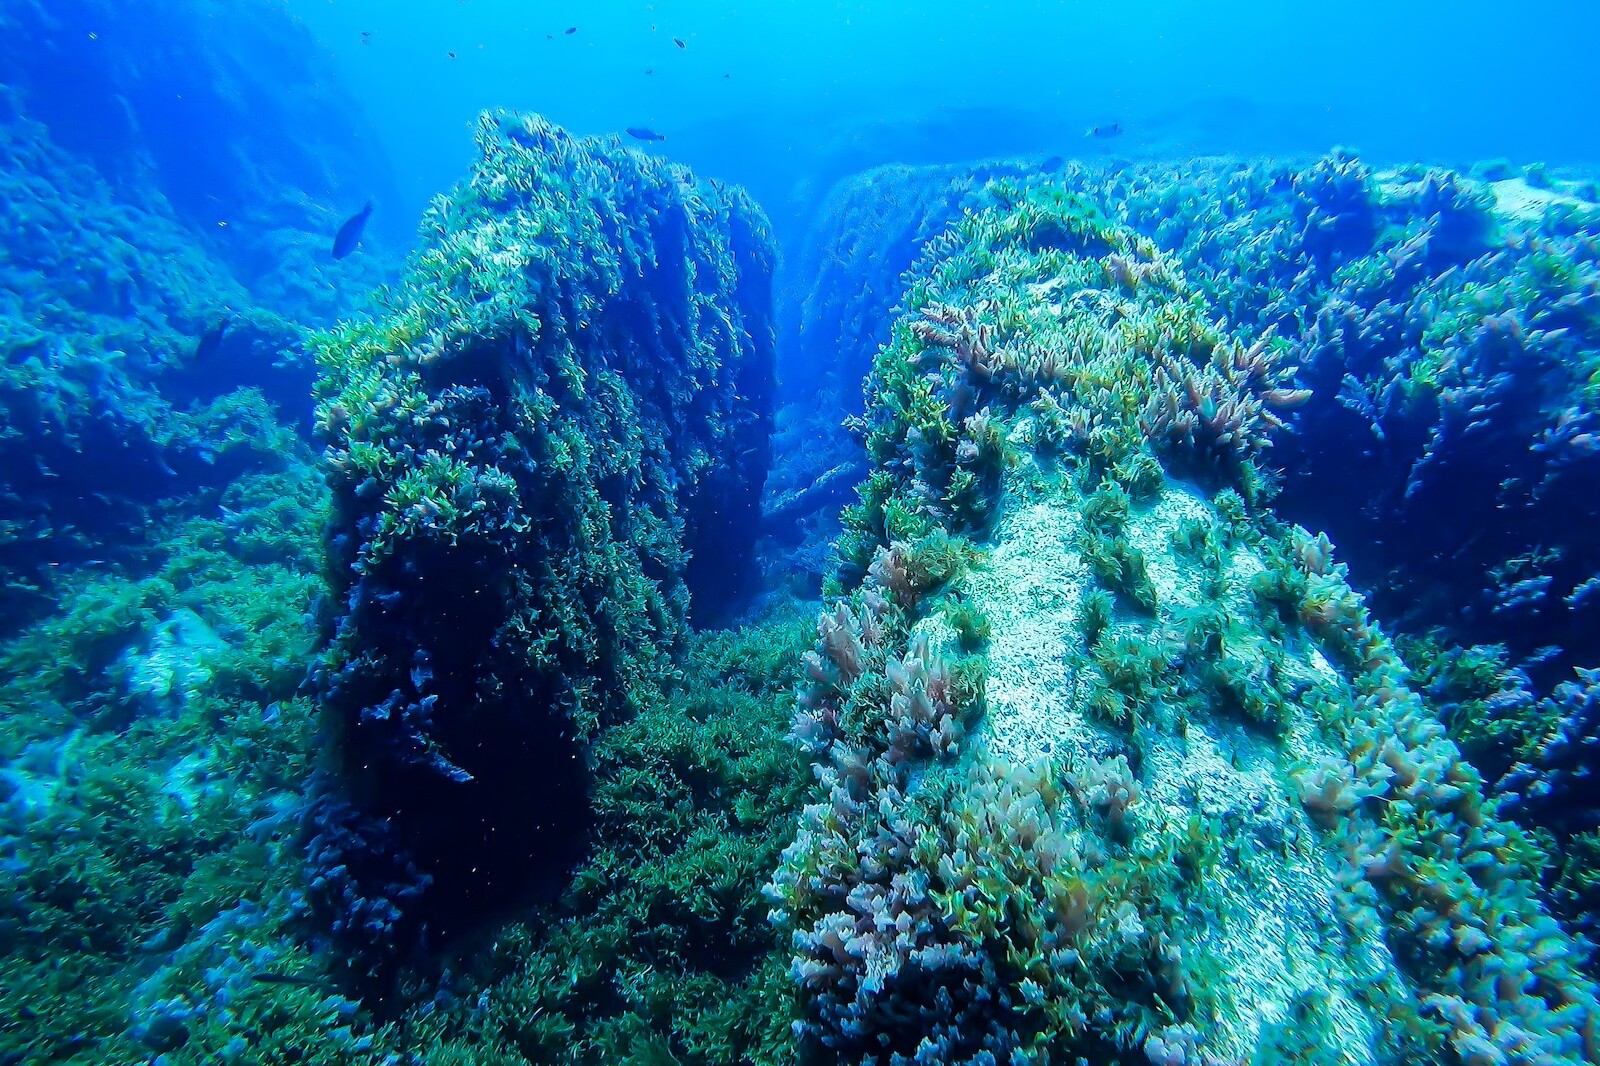 Benghisa Reef